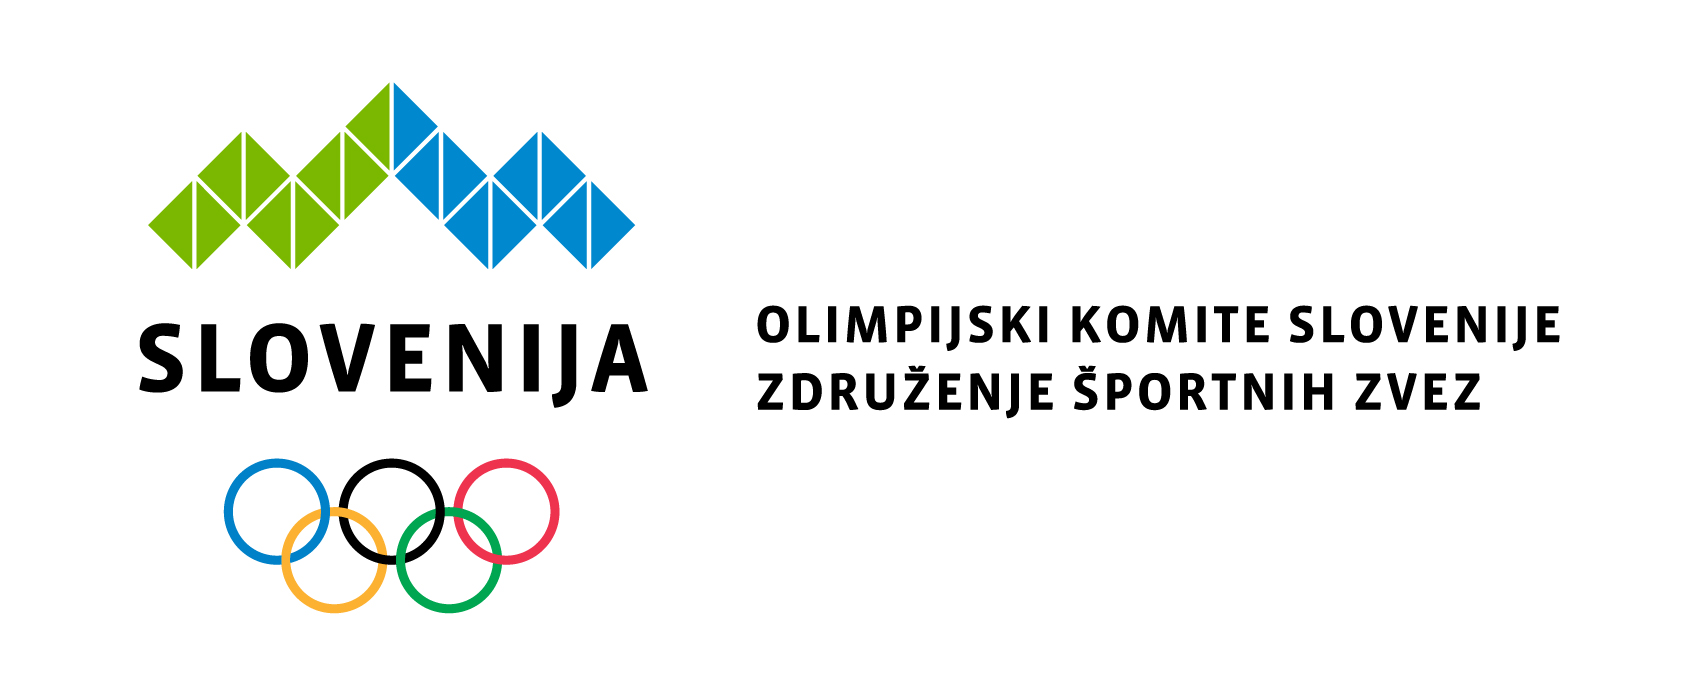 3. Evropske igre bodo leta 2023 v Krakowu